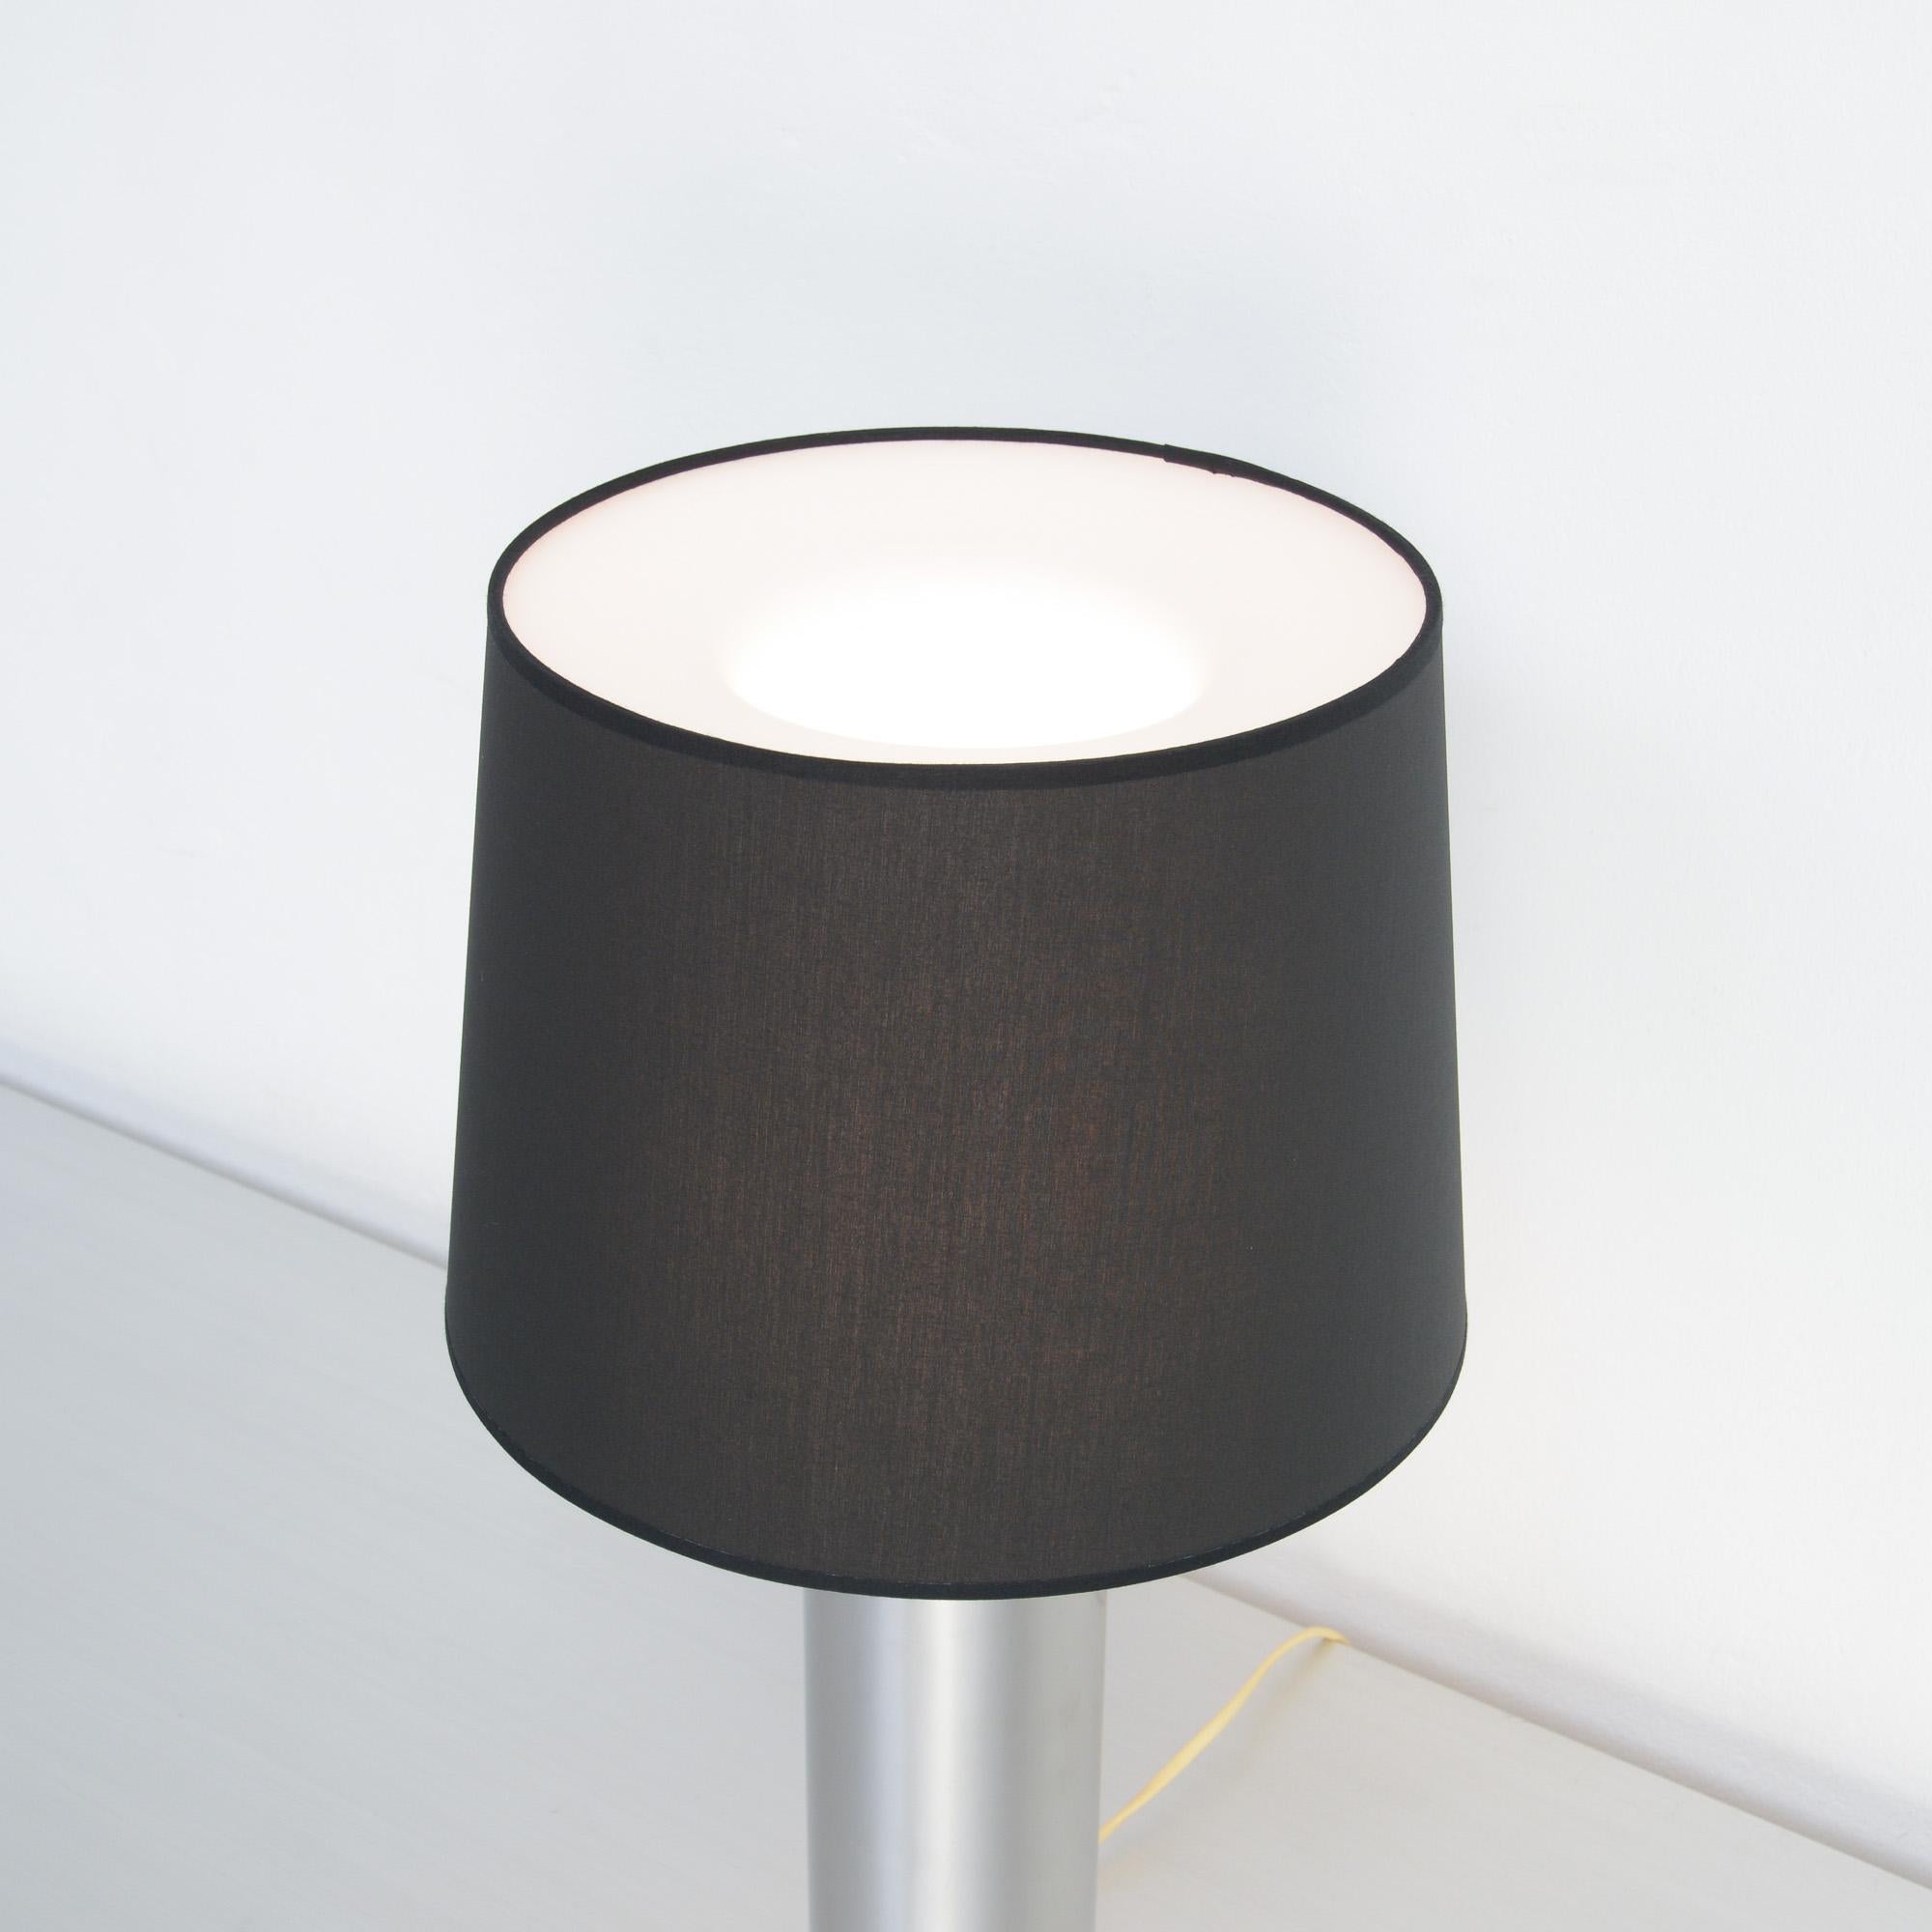 Diese minimalistische skandinavische Tischleuchte wurde in den 1960er Jahren von Uno & Östen Kristiansson für Luxus in Schweden entworfen.
Diese Lampe besteht aus einem verchromten Stahlzylinder mit Details aus Palisanderholz. Der weiße